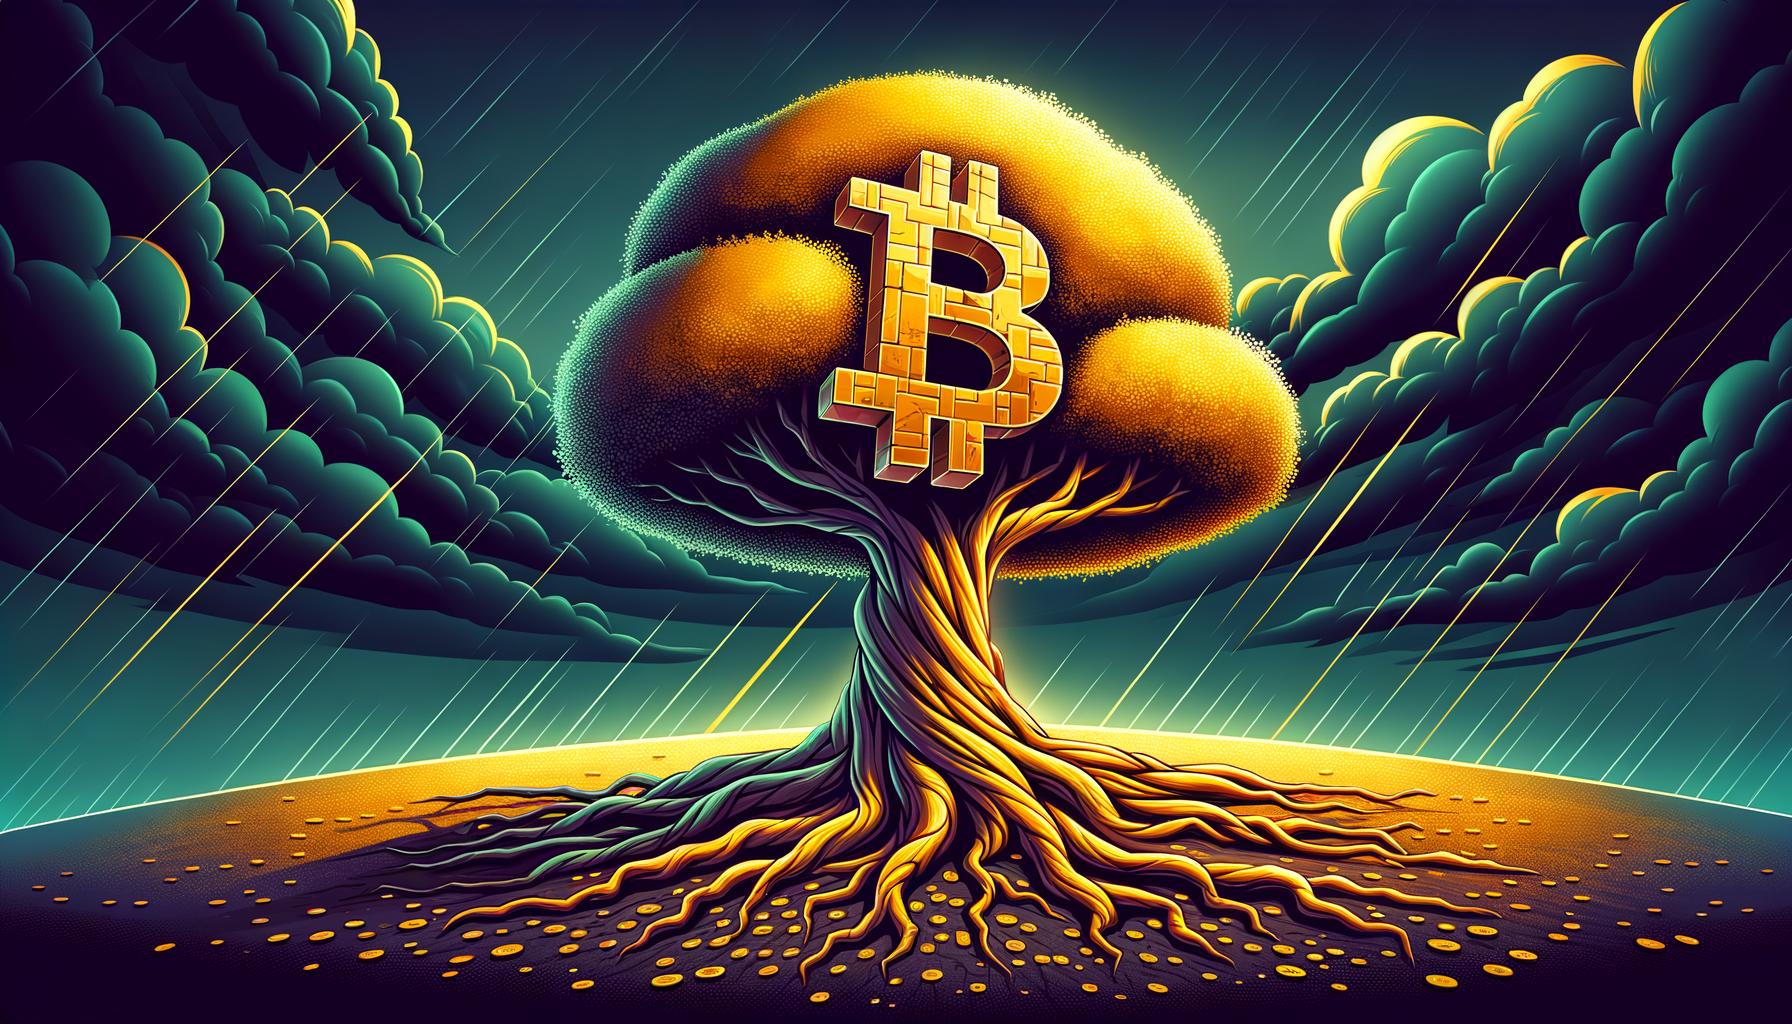 Bitcoin-Preis bleibt stabil: Wichtige Unterstützung trotz Marktunsicherheit aufrechterhalten